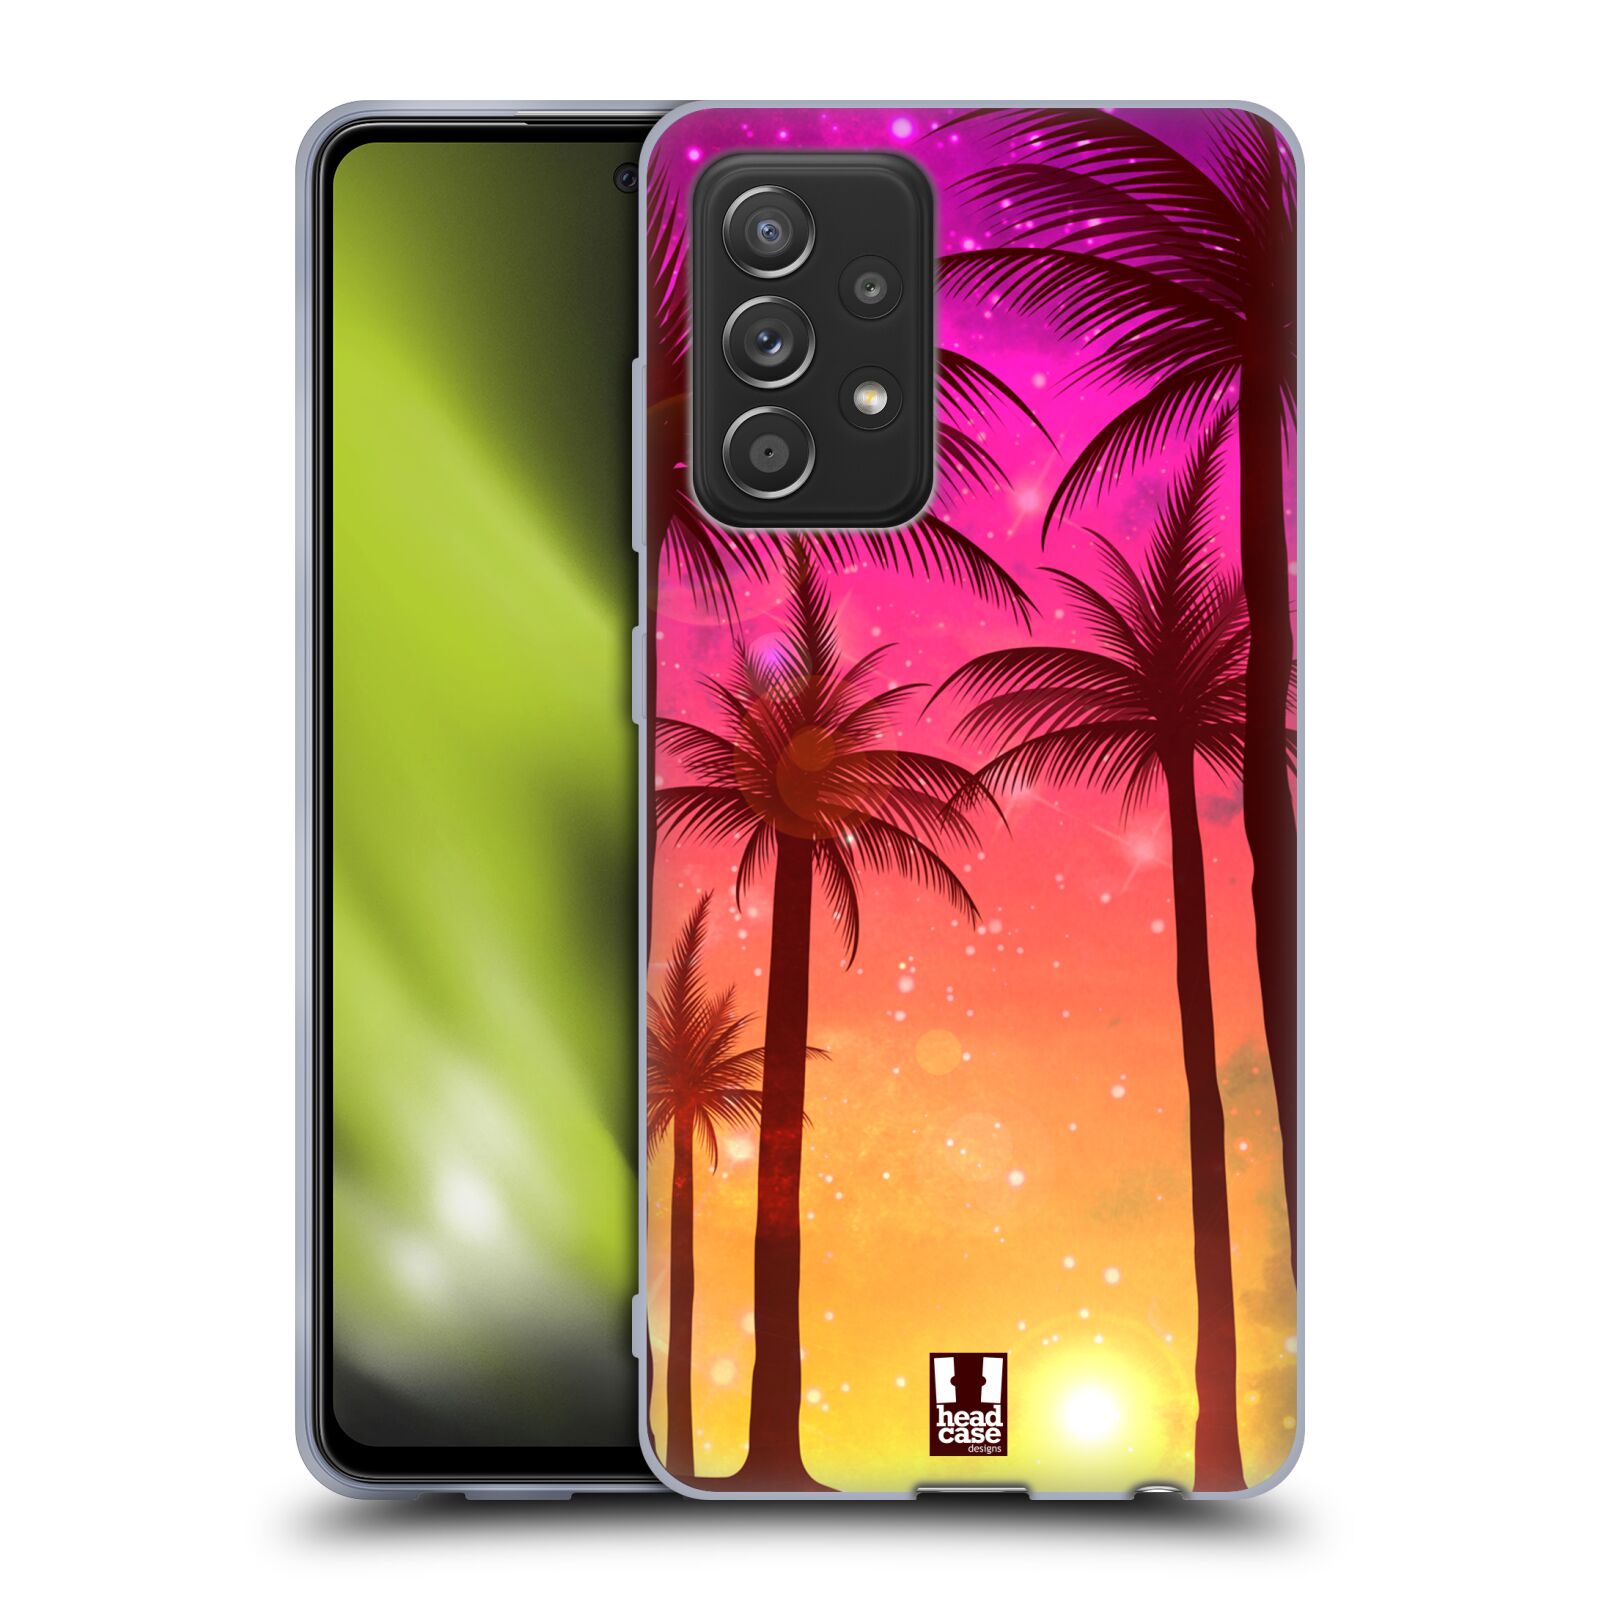 Plastový obal HEAD CASE na mobil Samsung Galaxy A52 / A52 5G / A52s 5G vzor Kreslený motiv silueta moře a palmy RŮŽOVÁ